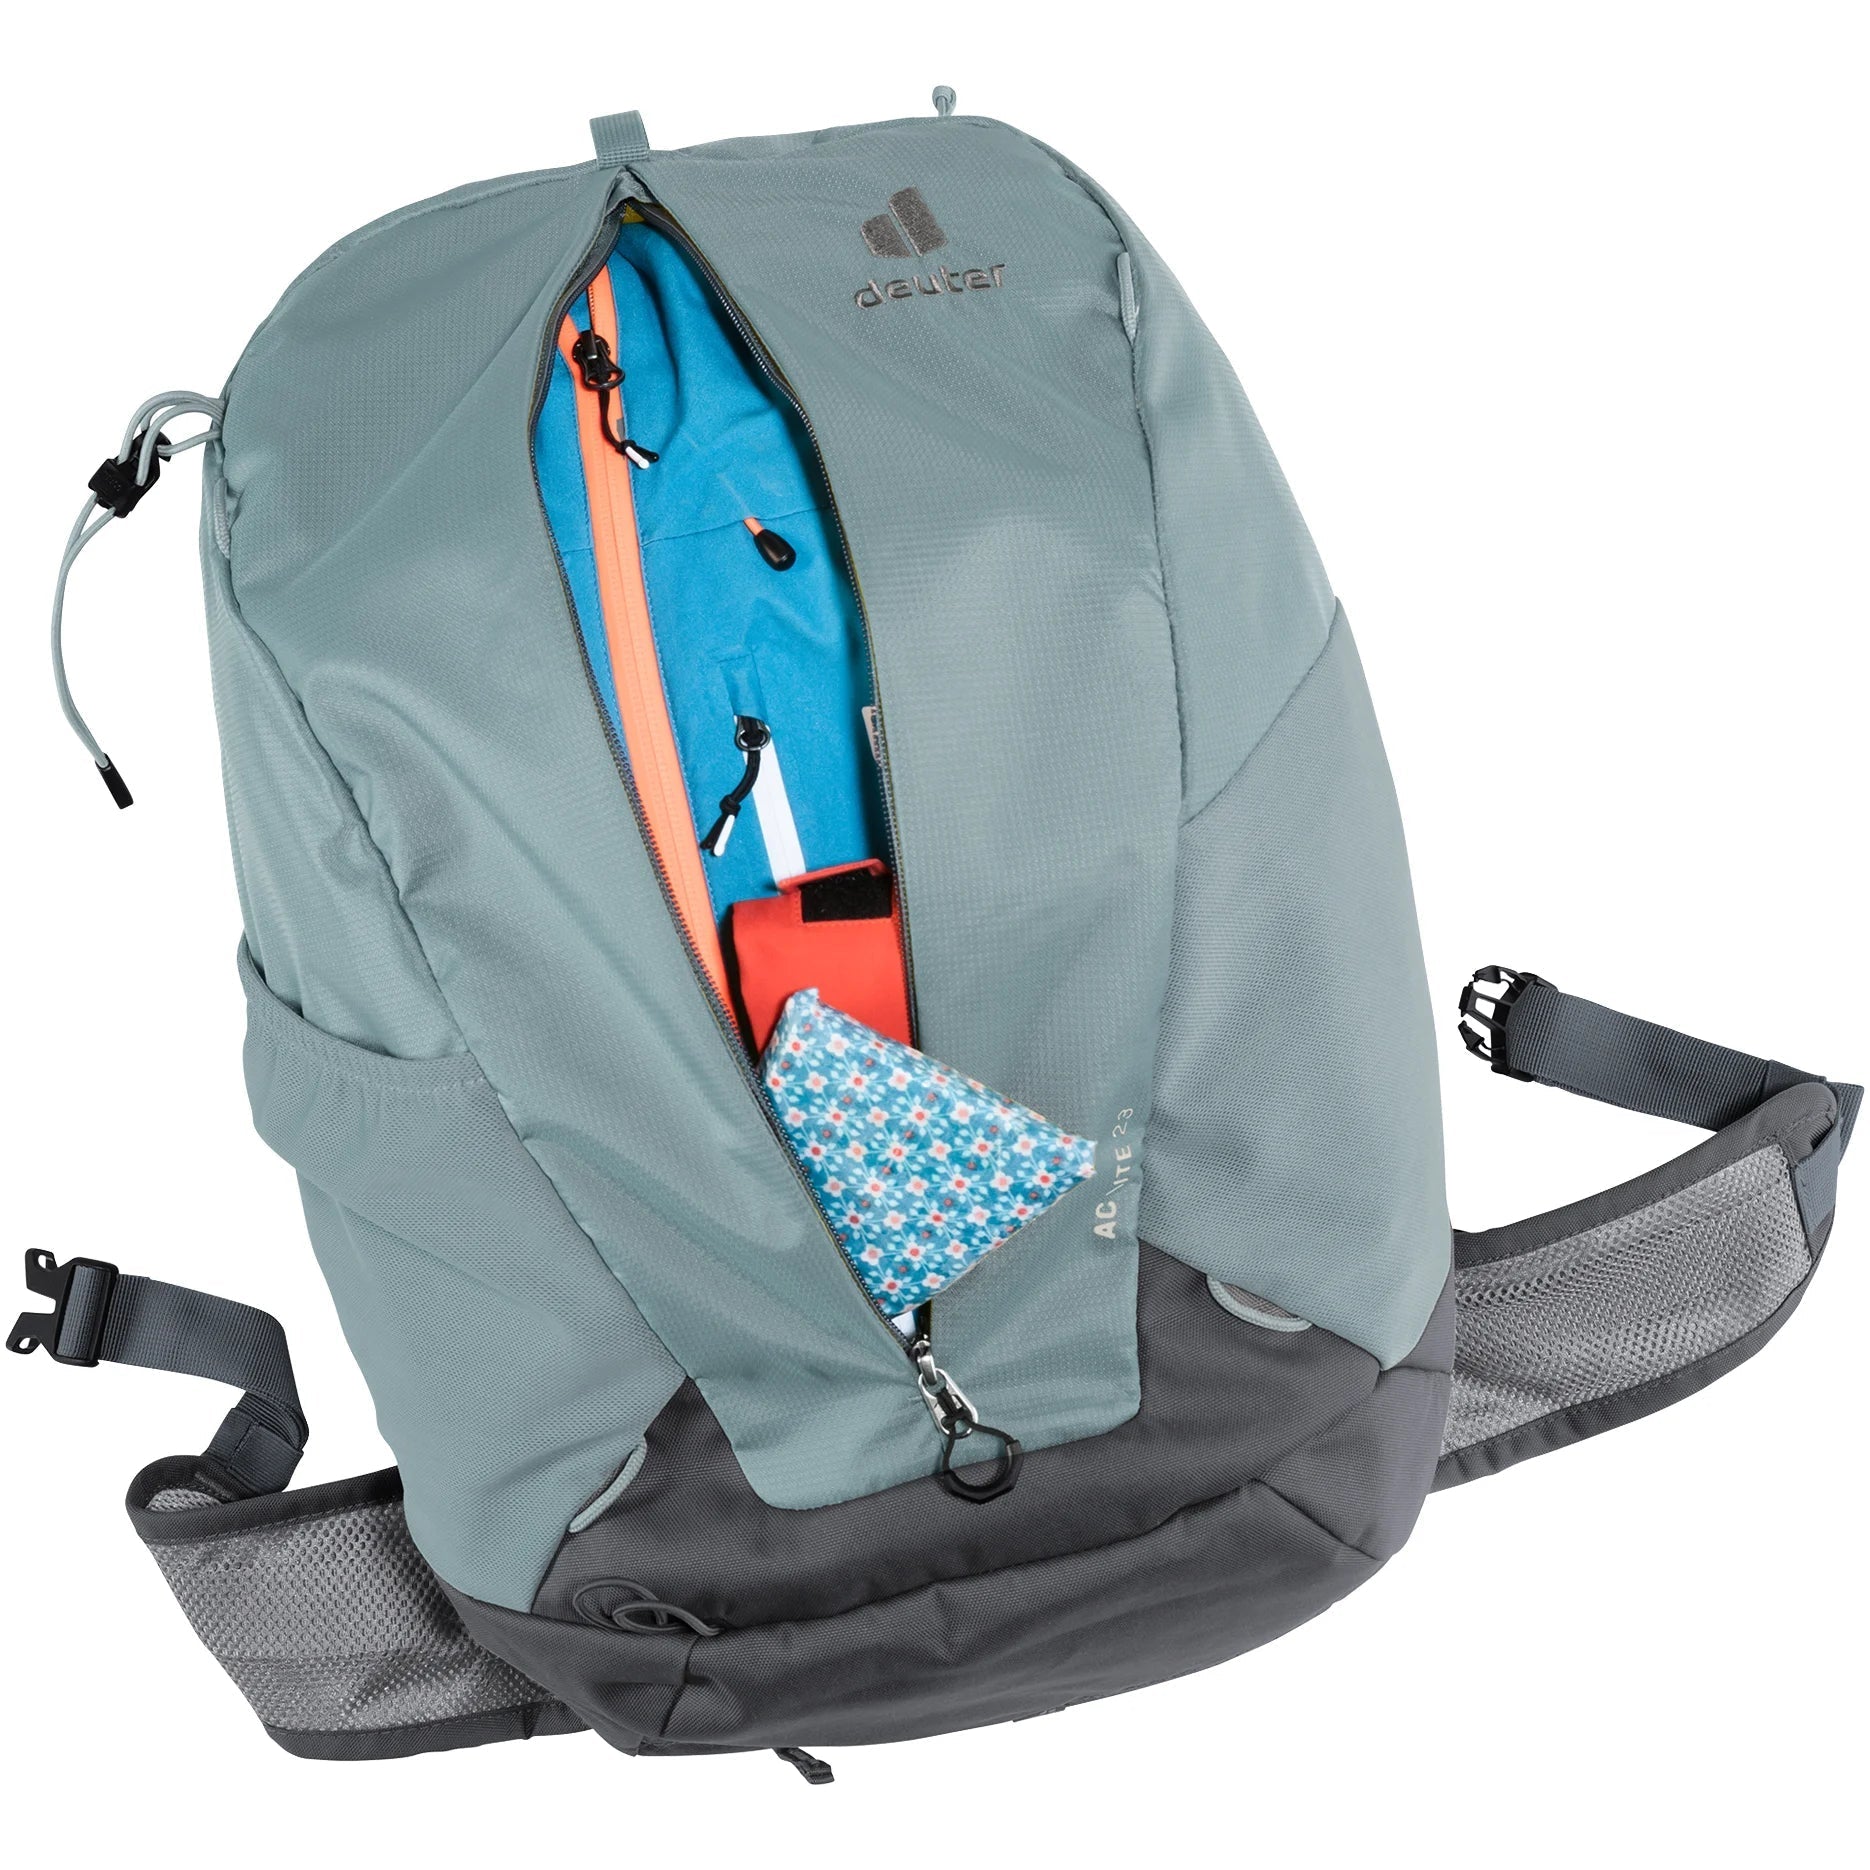 Deuter Travel AC Lite 23 sac à dos de randonnée 52 cm - Paprika Redwood